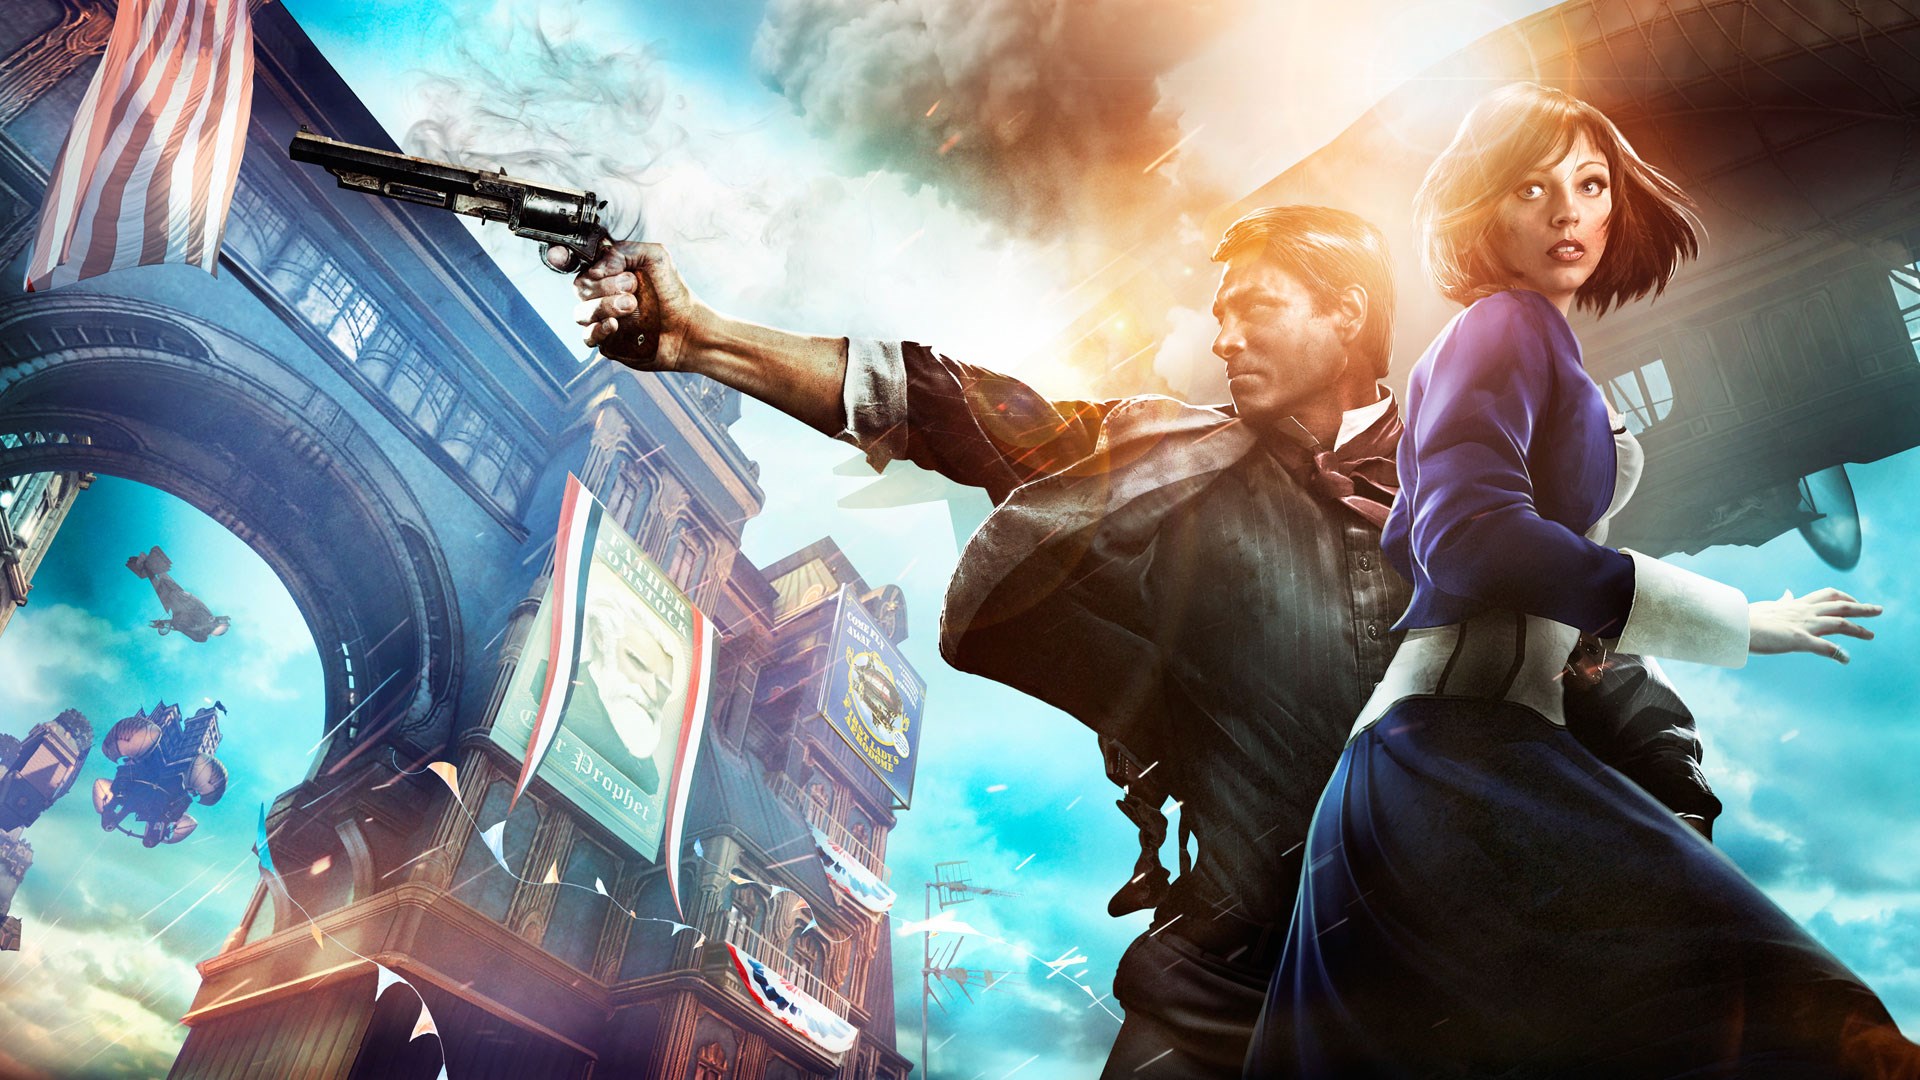 BioShock Infinite: Burial at Sea Episode 2 Review